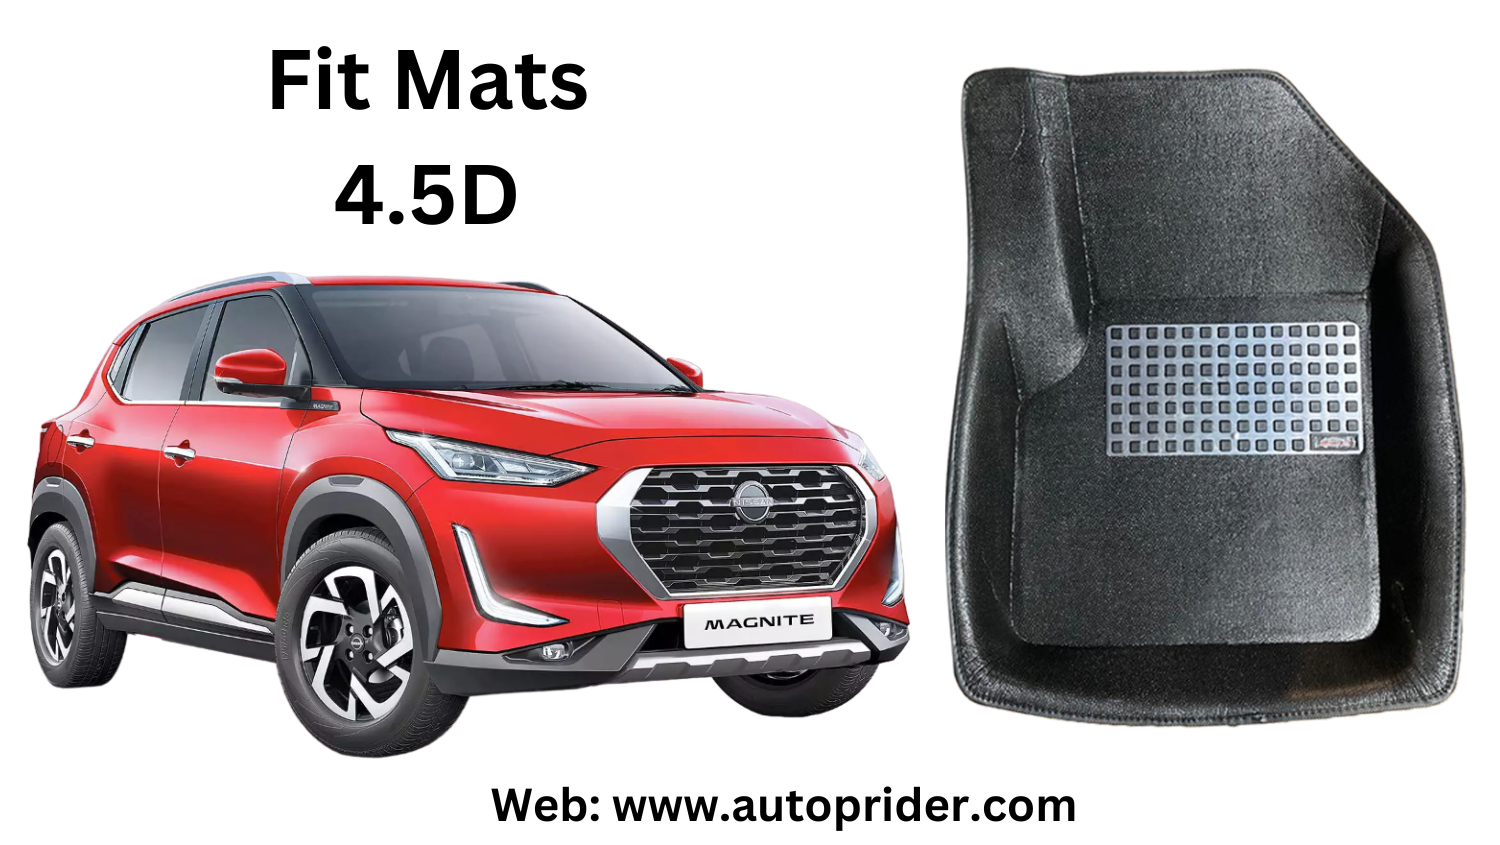 Autoprider | Fit Mats 4.5D Economy Car Mats for Nissan Magnite